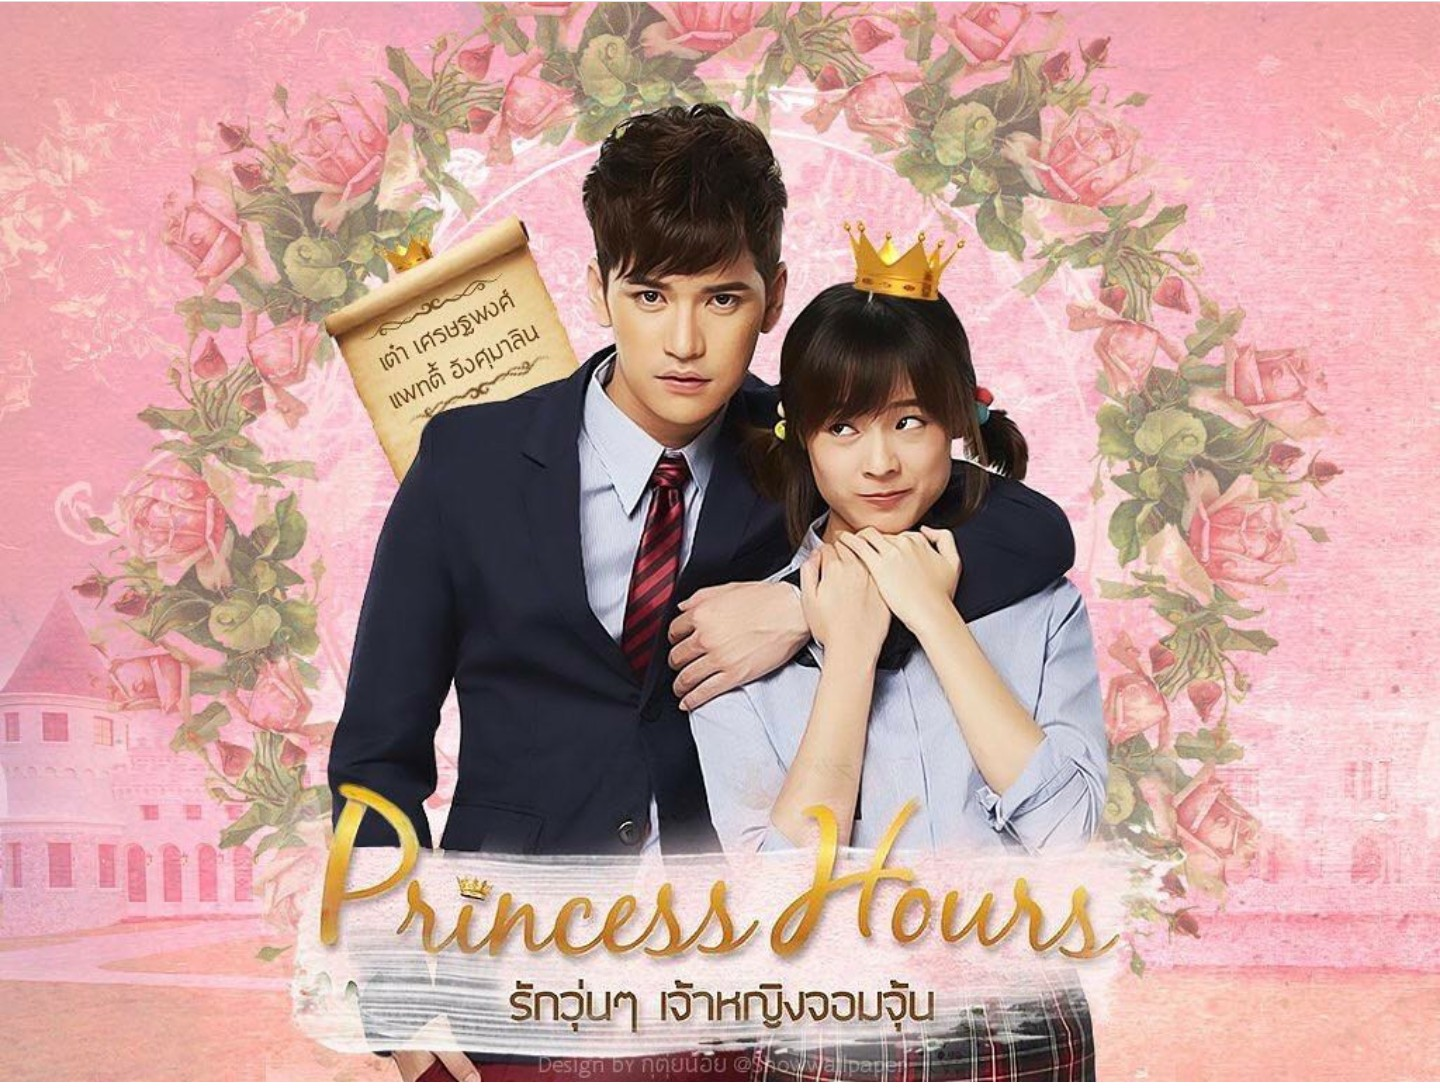 Дорама дворец принцесса Тайланд. Princess hours дорама. Моя принцесса дорама Корея.